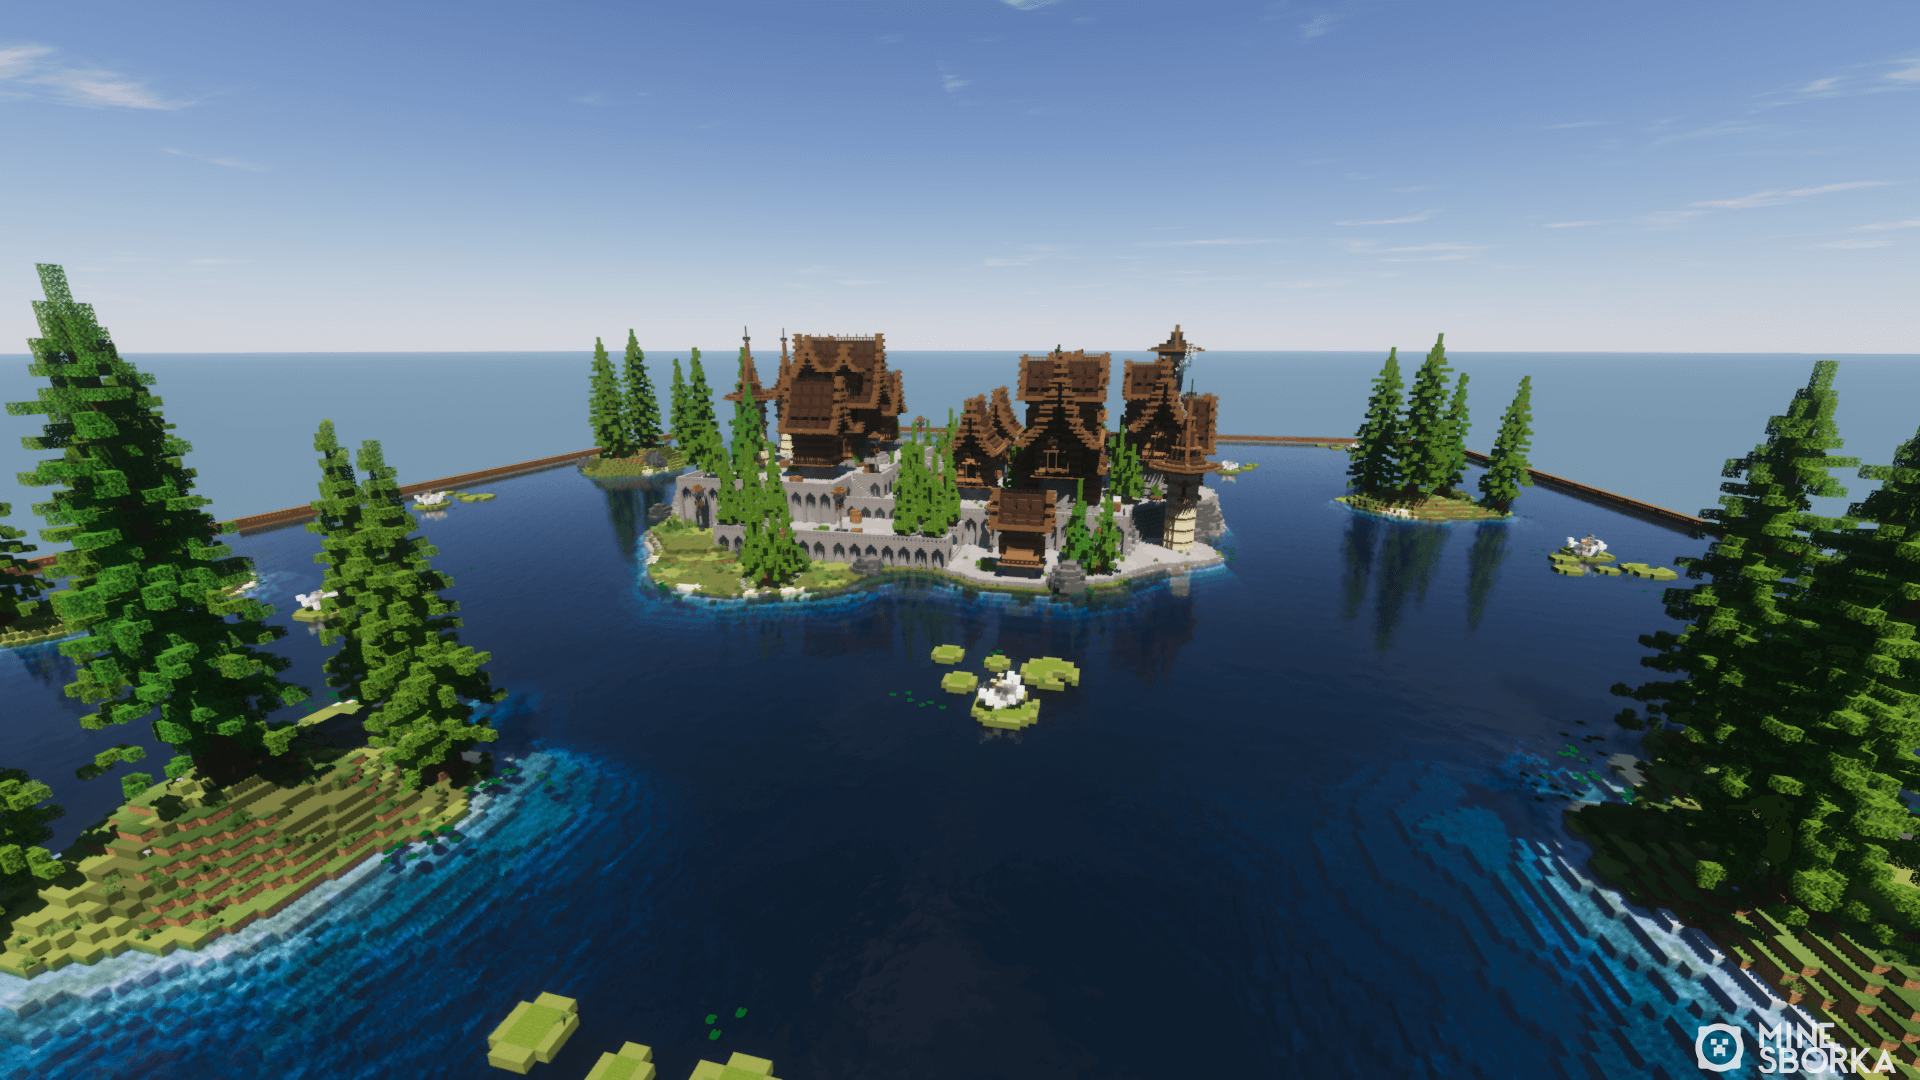 BrownSpawn - Скачать карту небольшой деревеньки на острове для Minecraft